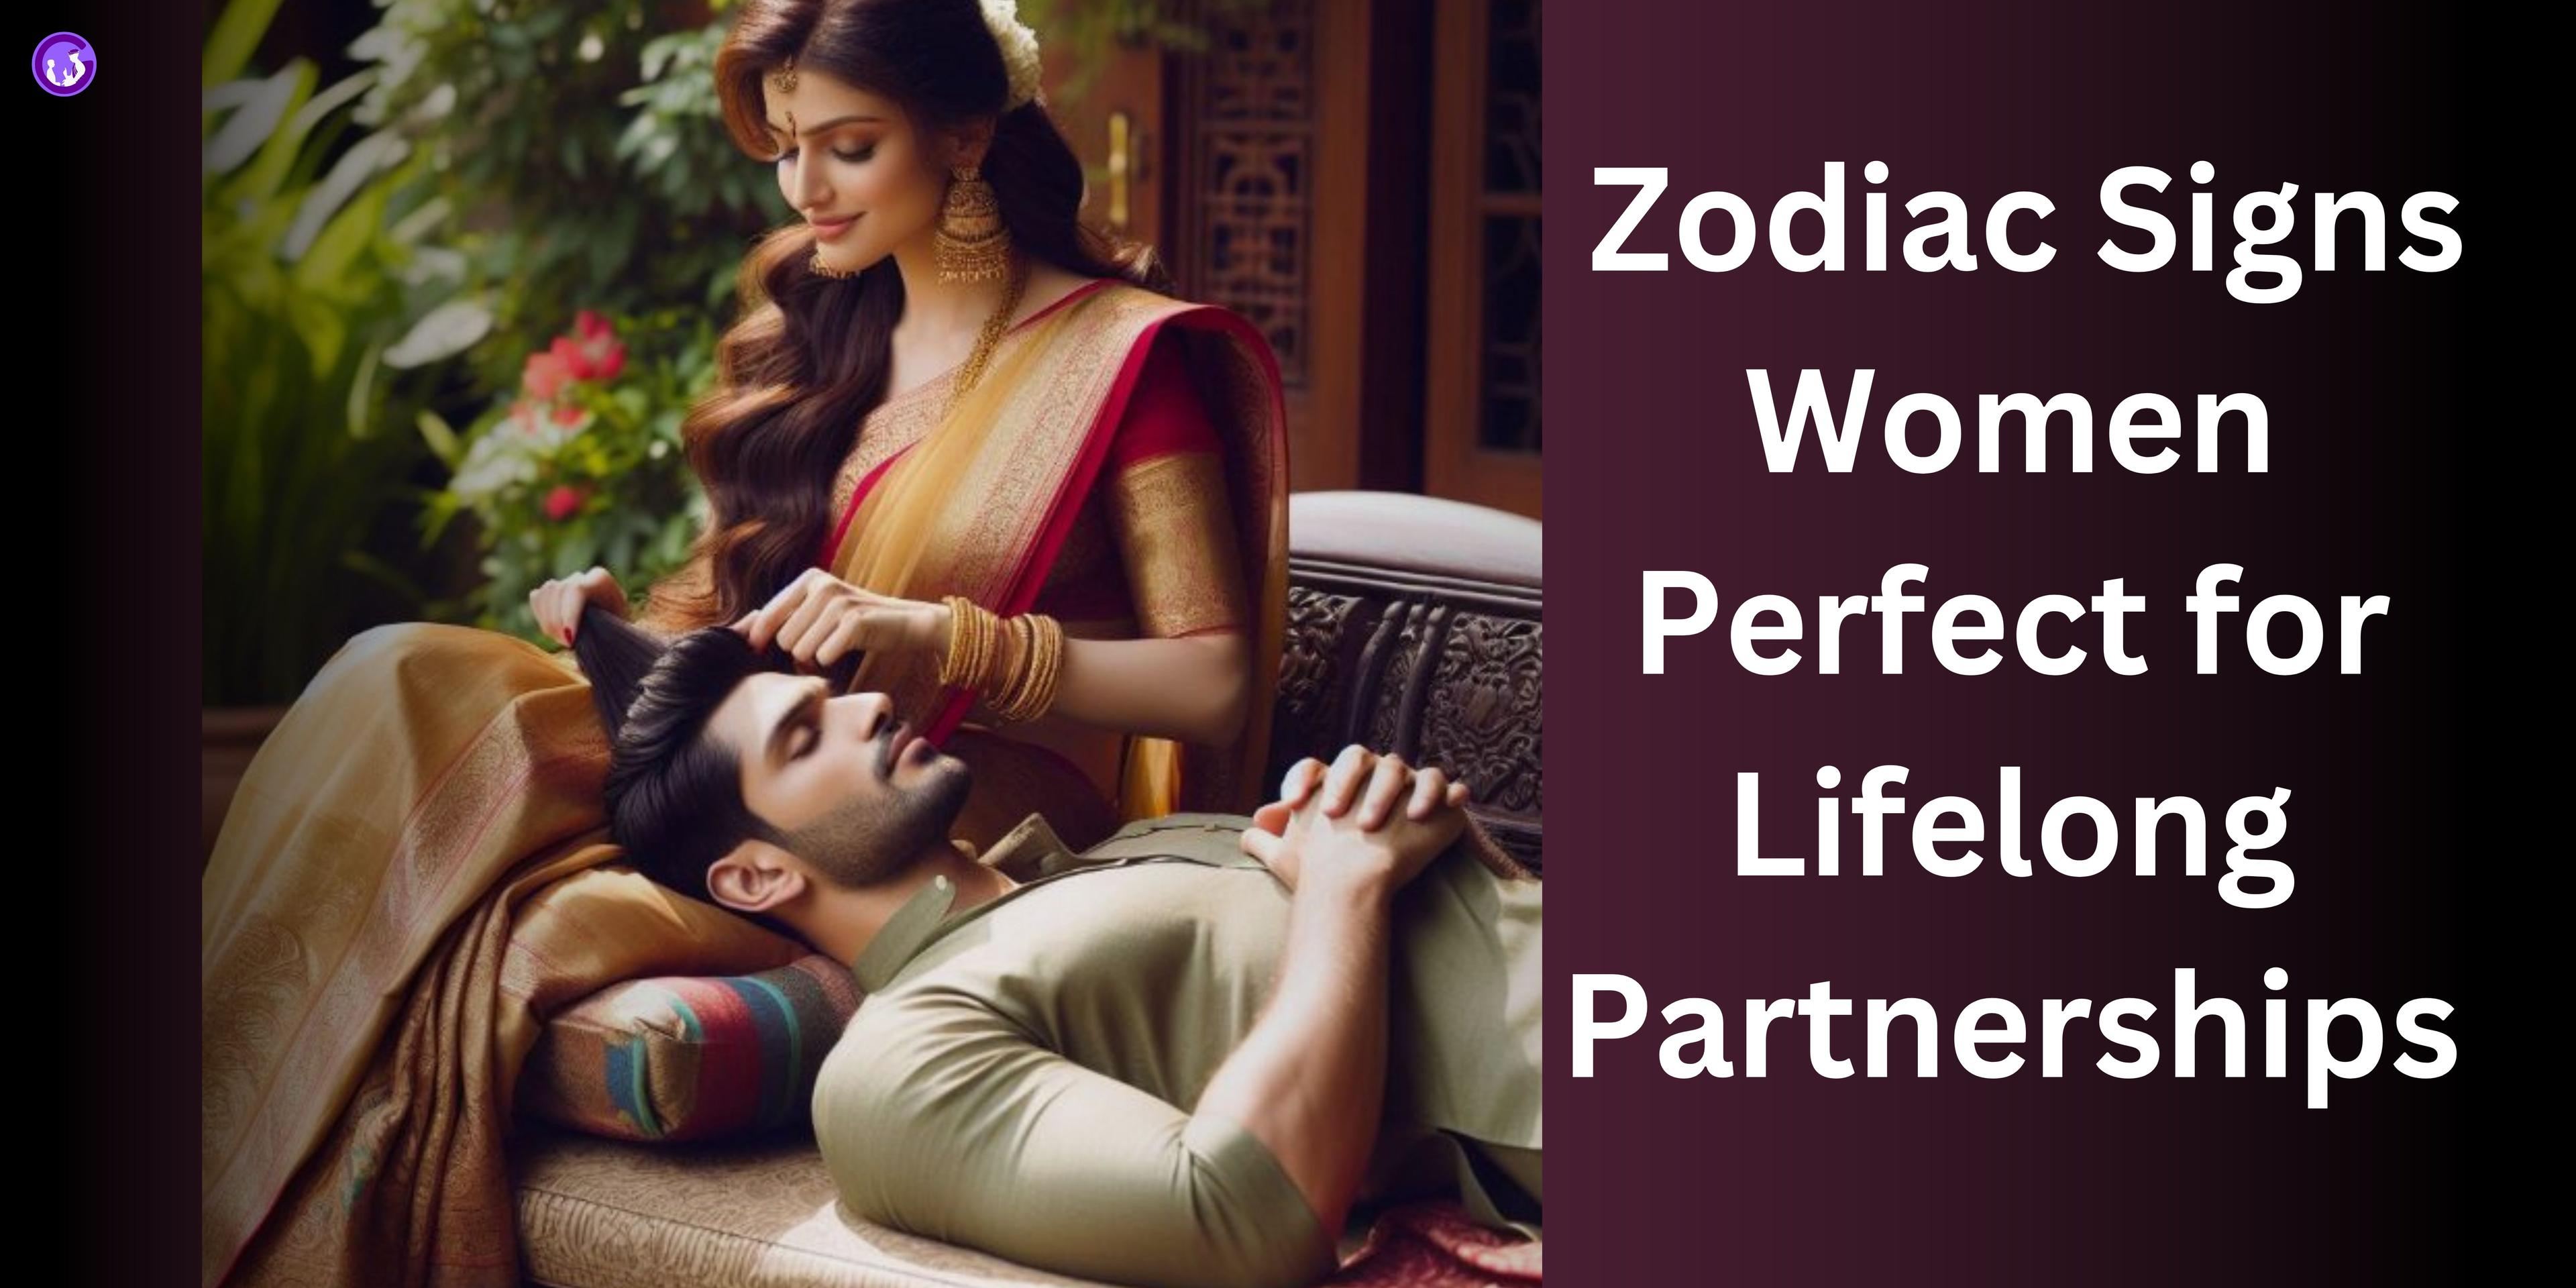 Zodiac Signs Women Perfect for Lifelong Partnerships